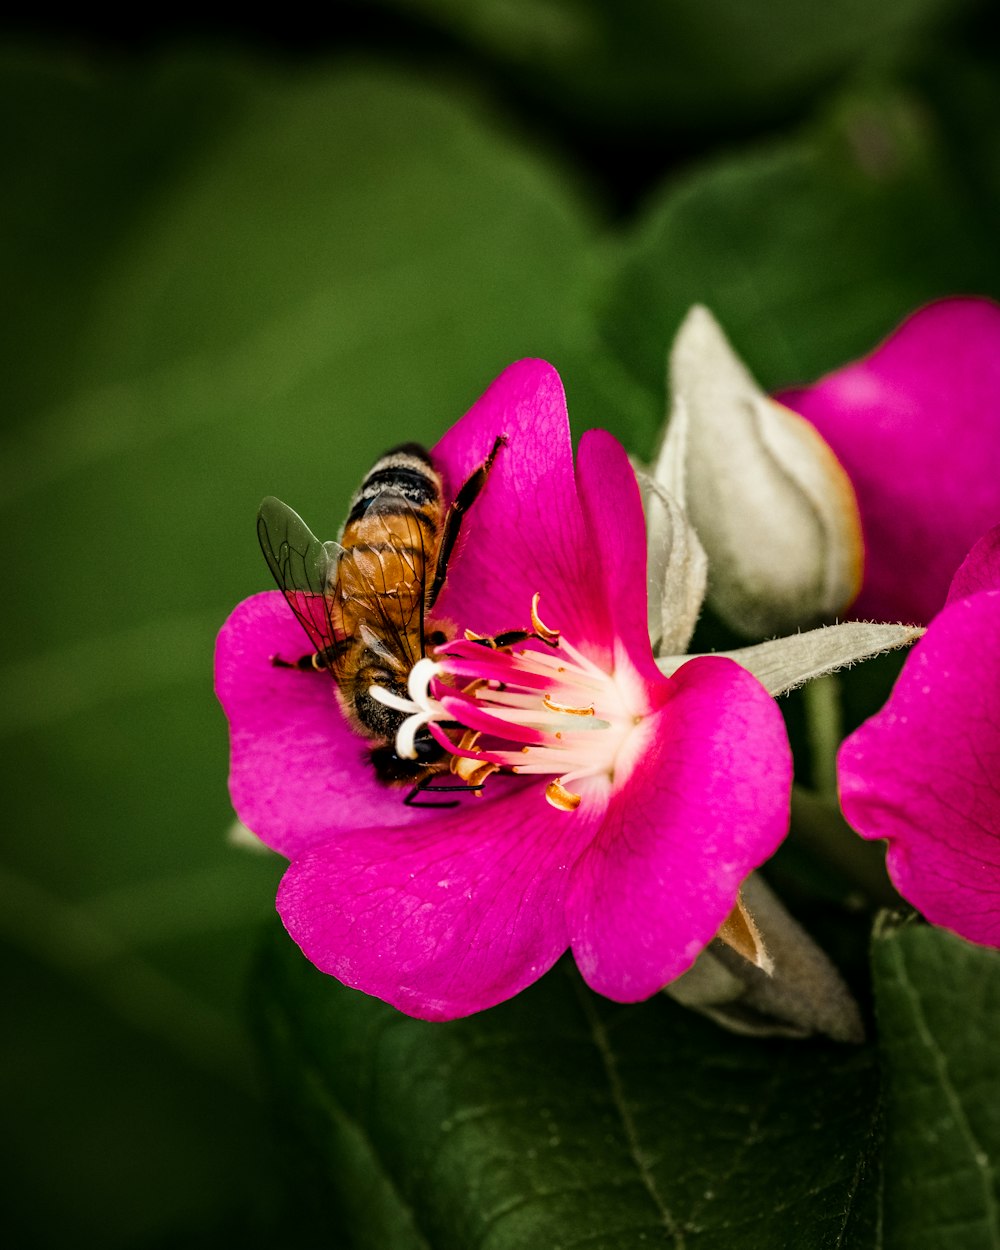 abeja posada en flor rosada en fotografía de primer plano durante el día